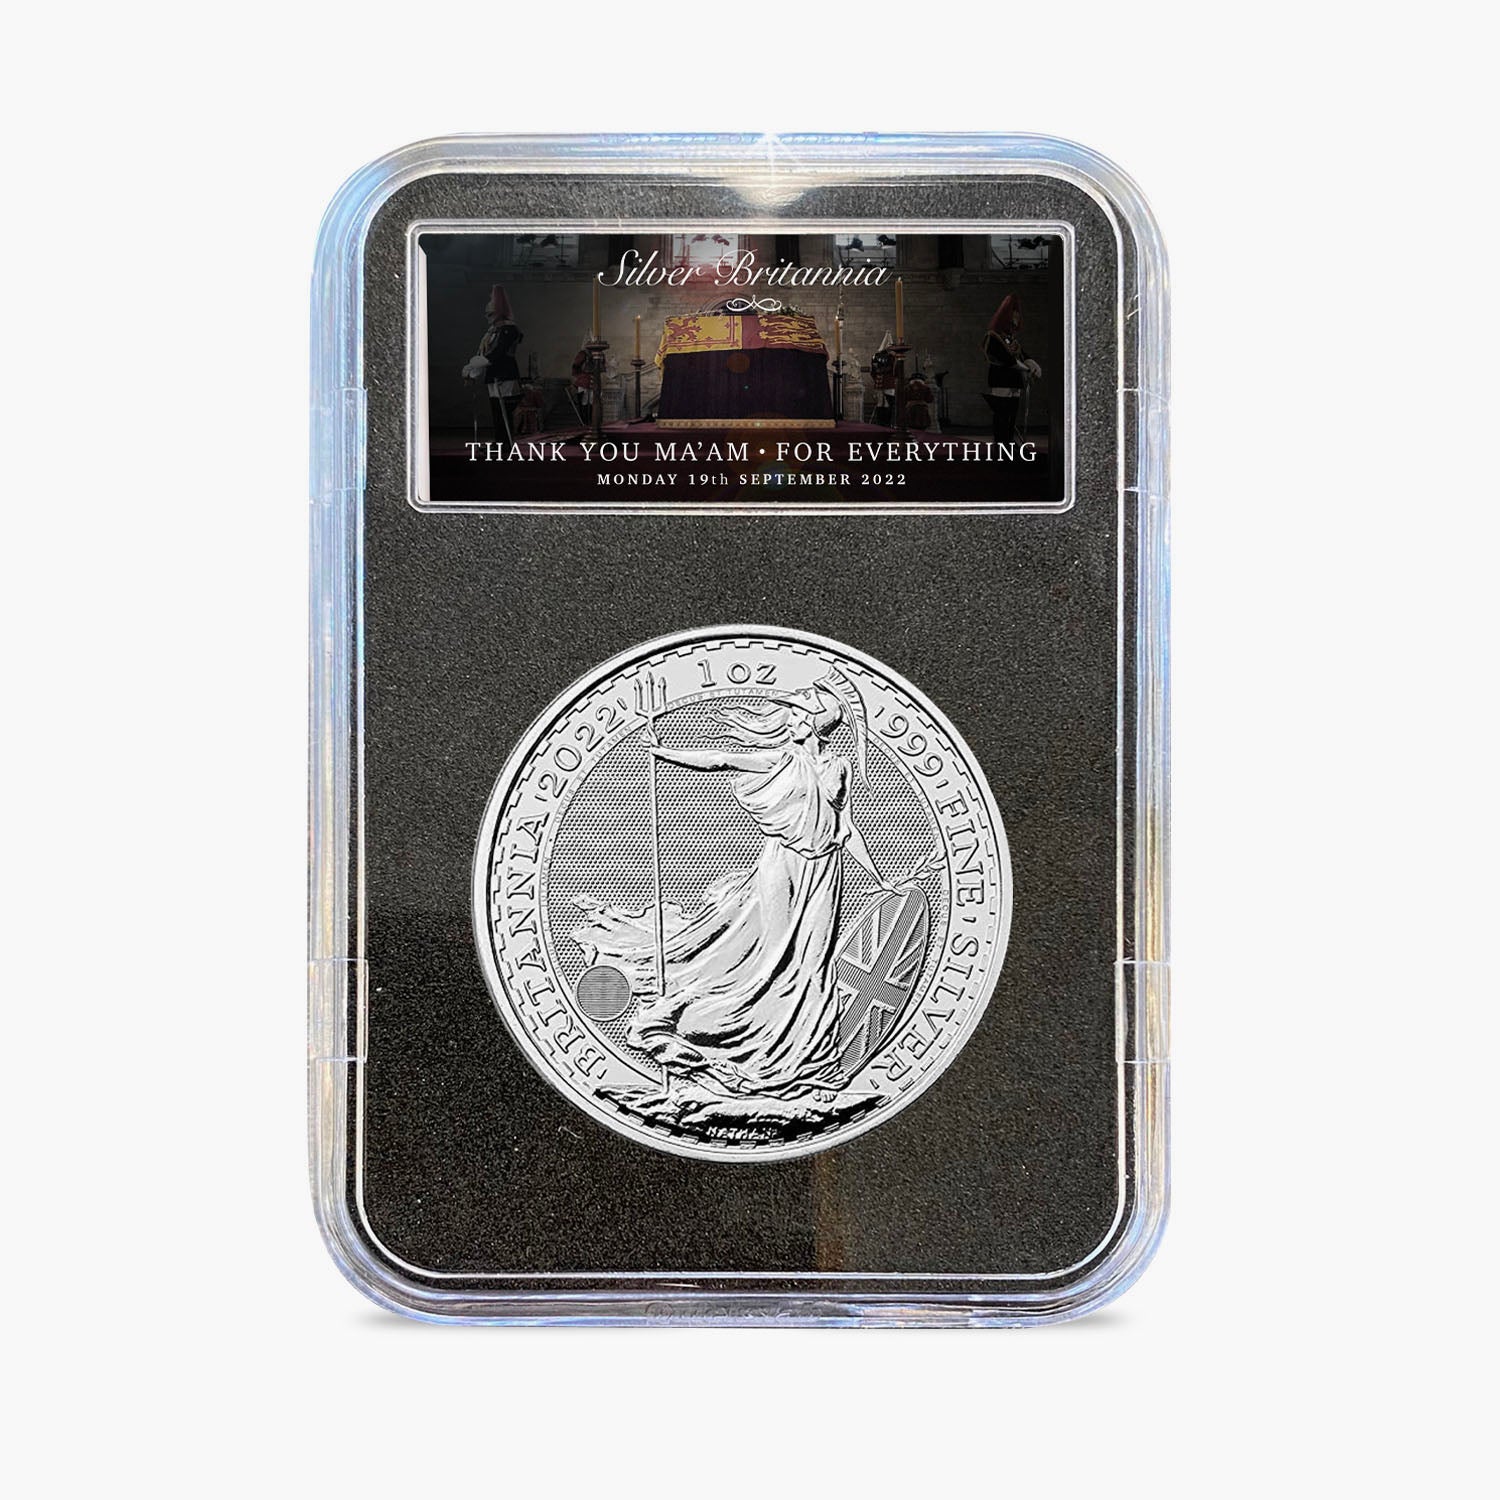 The Last Britannia - In Memoriam Solid Silver Britannia Edition